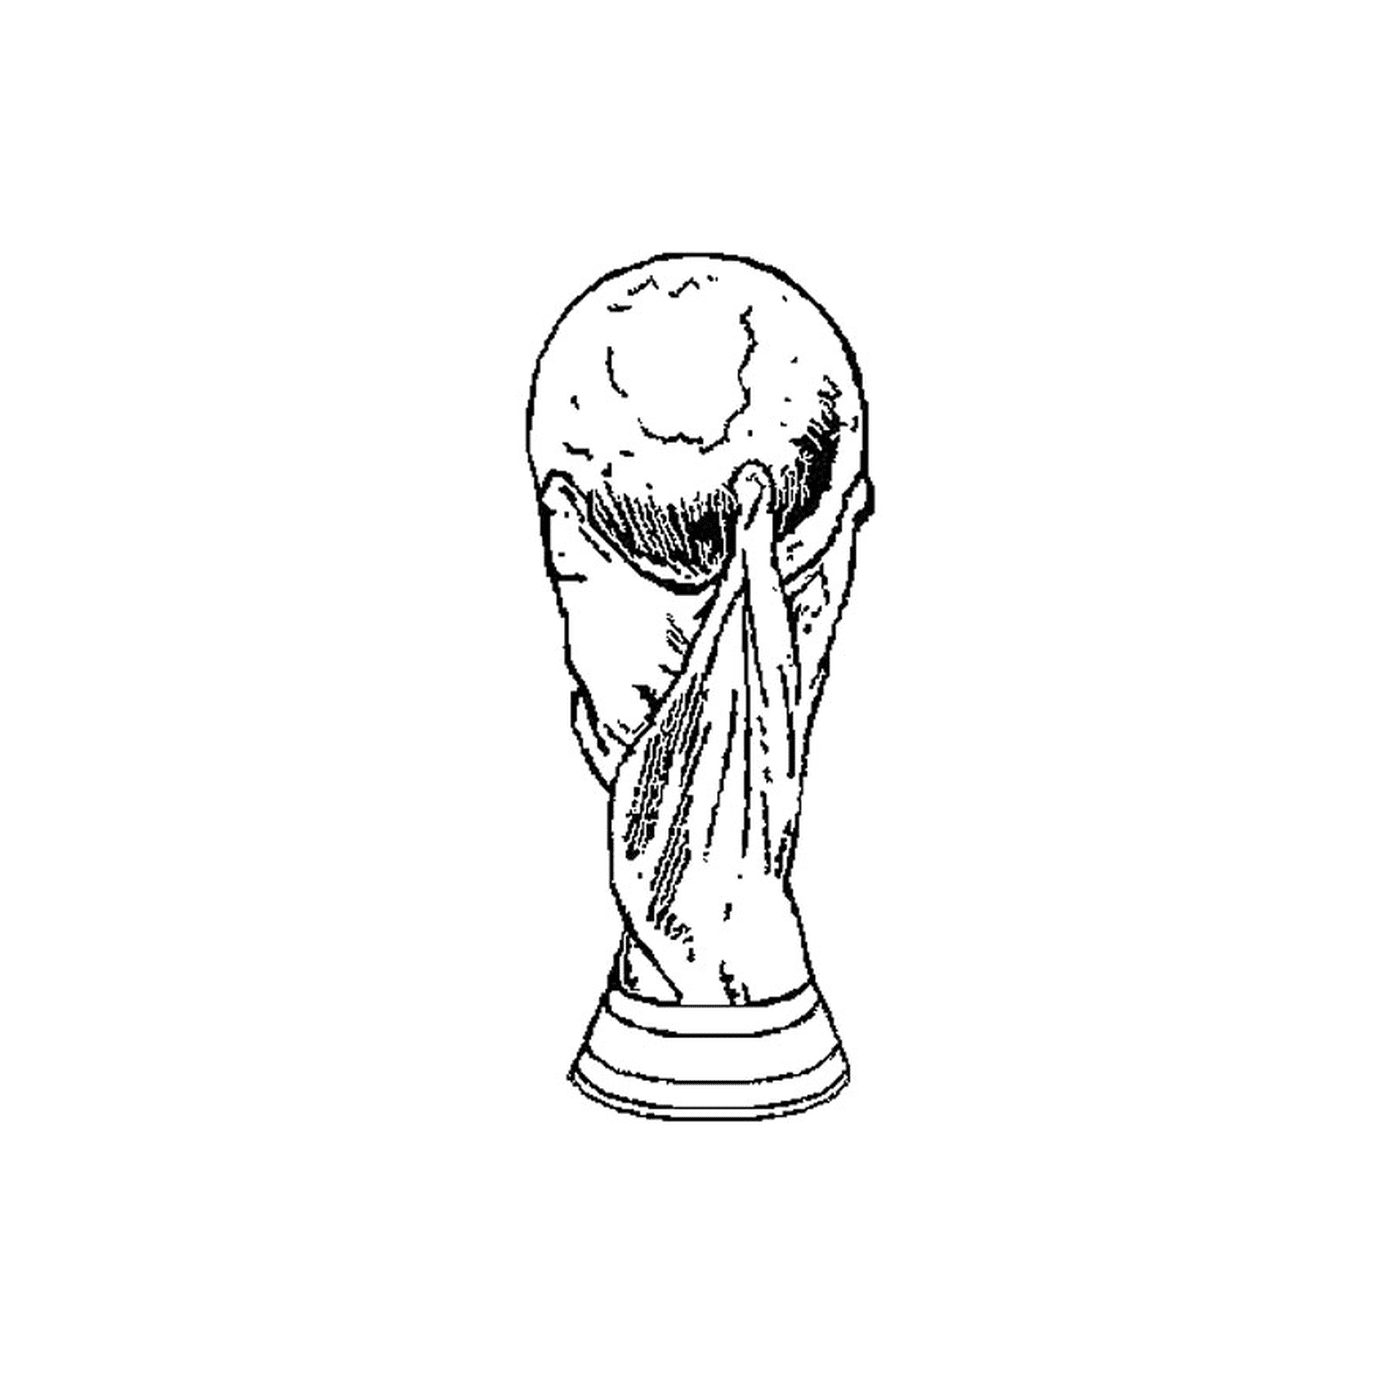   Coupe du Monde 